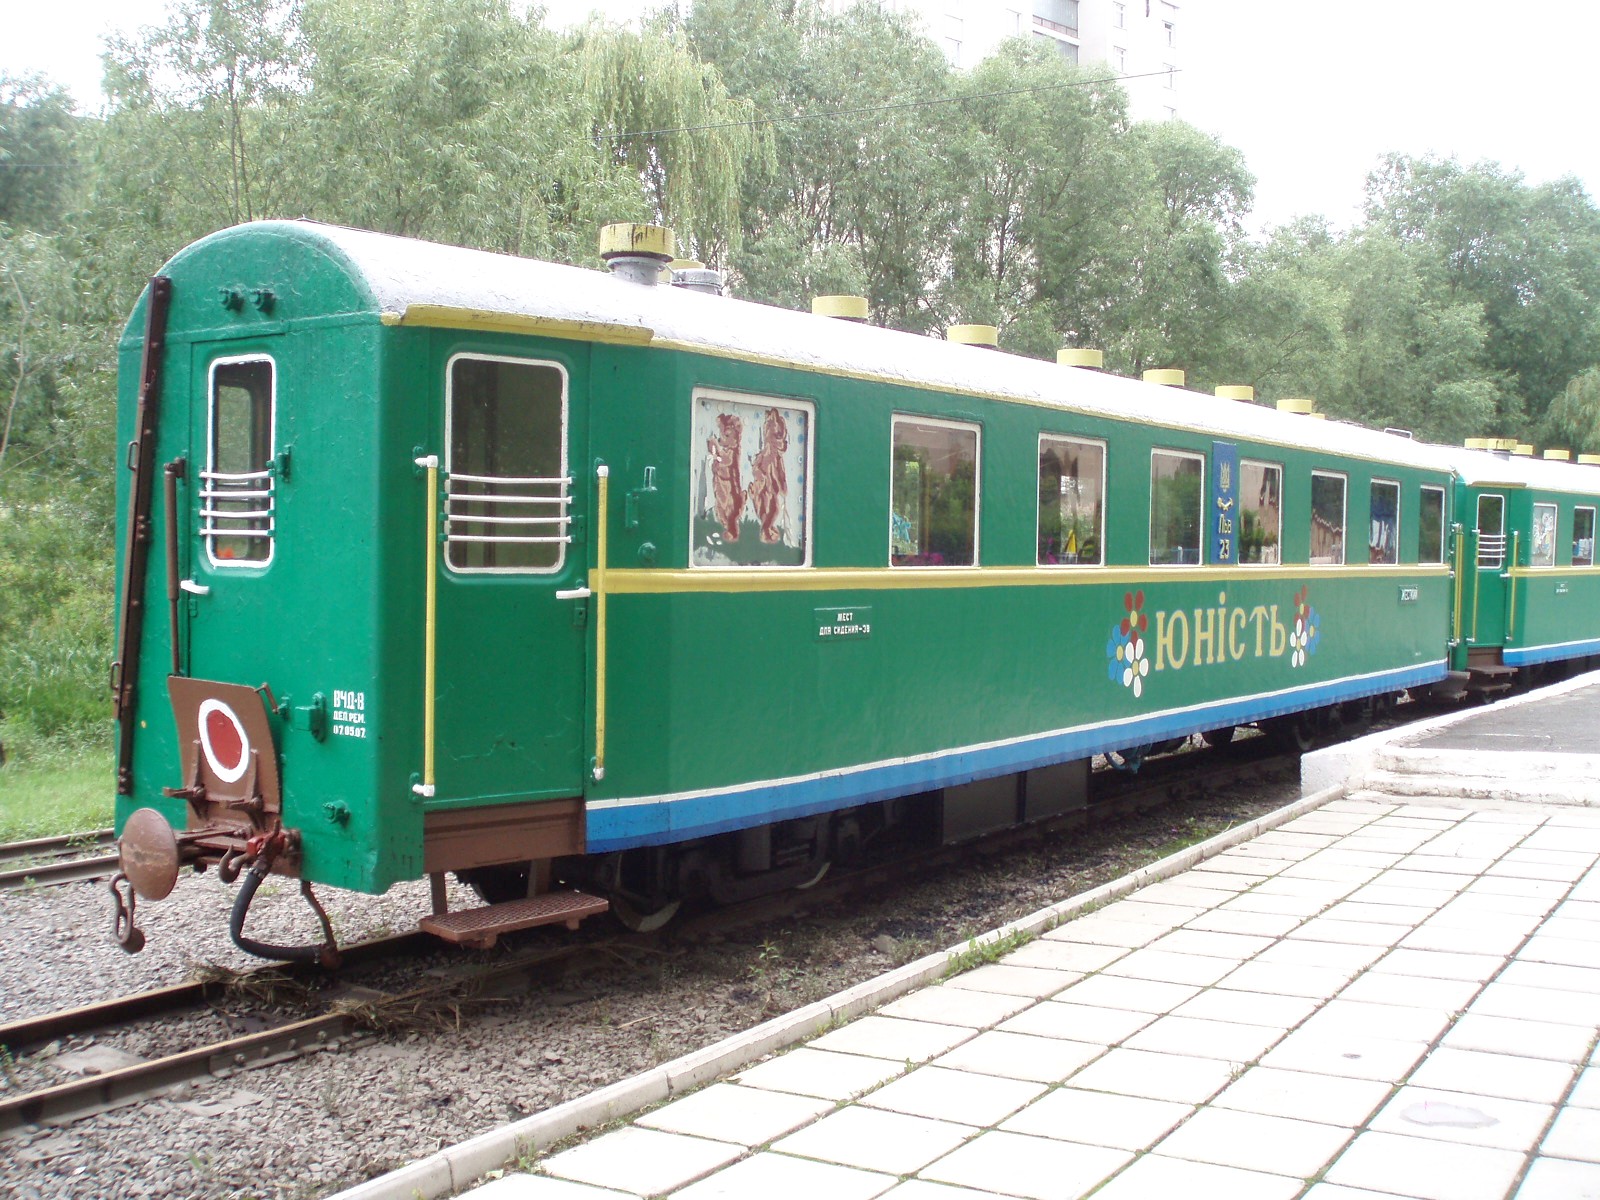 Луцкая детская железная дорога  —  фотографии, сделанные в 2007 году (часть 5)